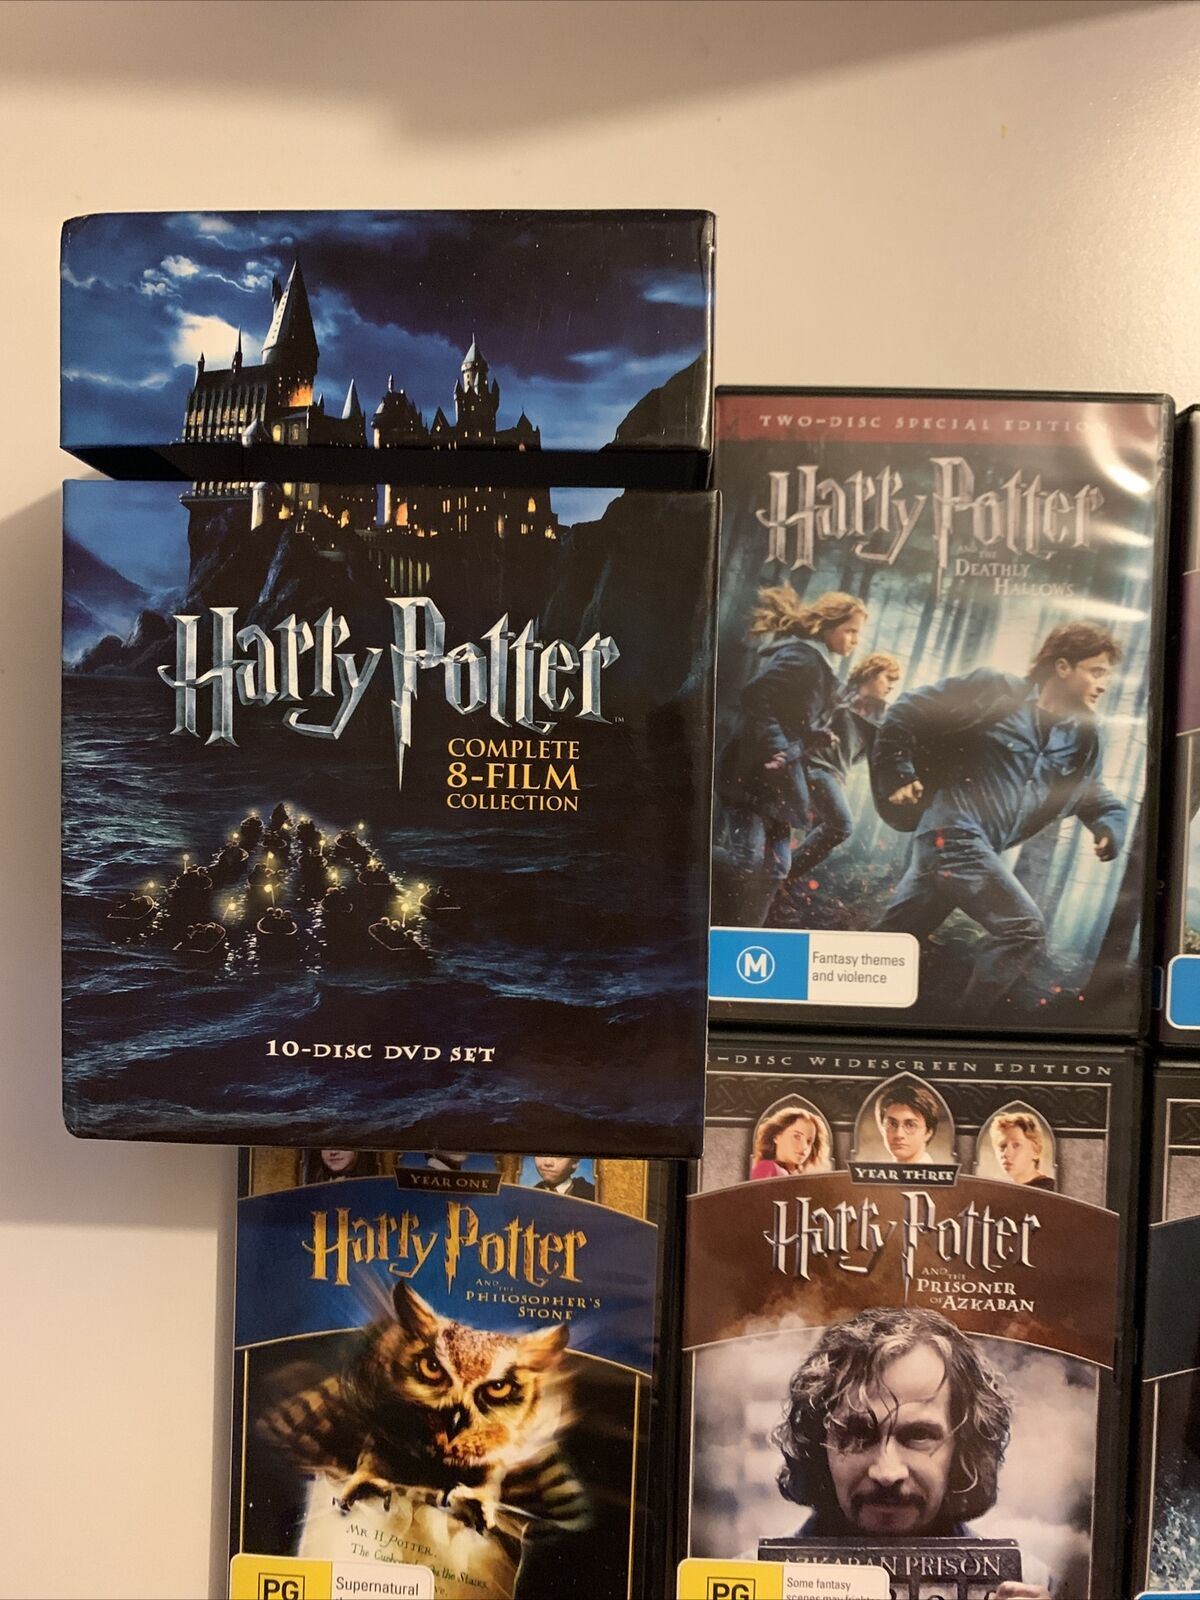 Harry Potter Coffret Harry Potter 8 Films DVD - DVD Zone 2 - Chris